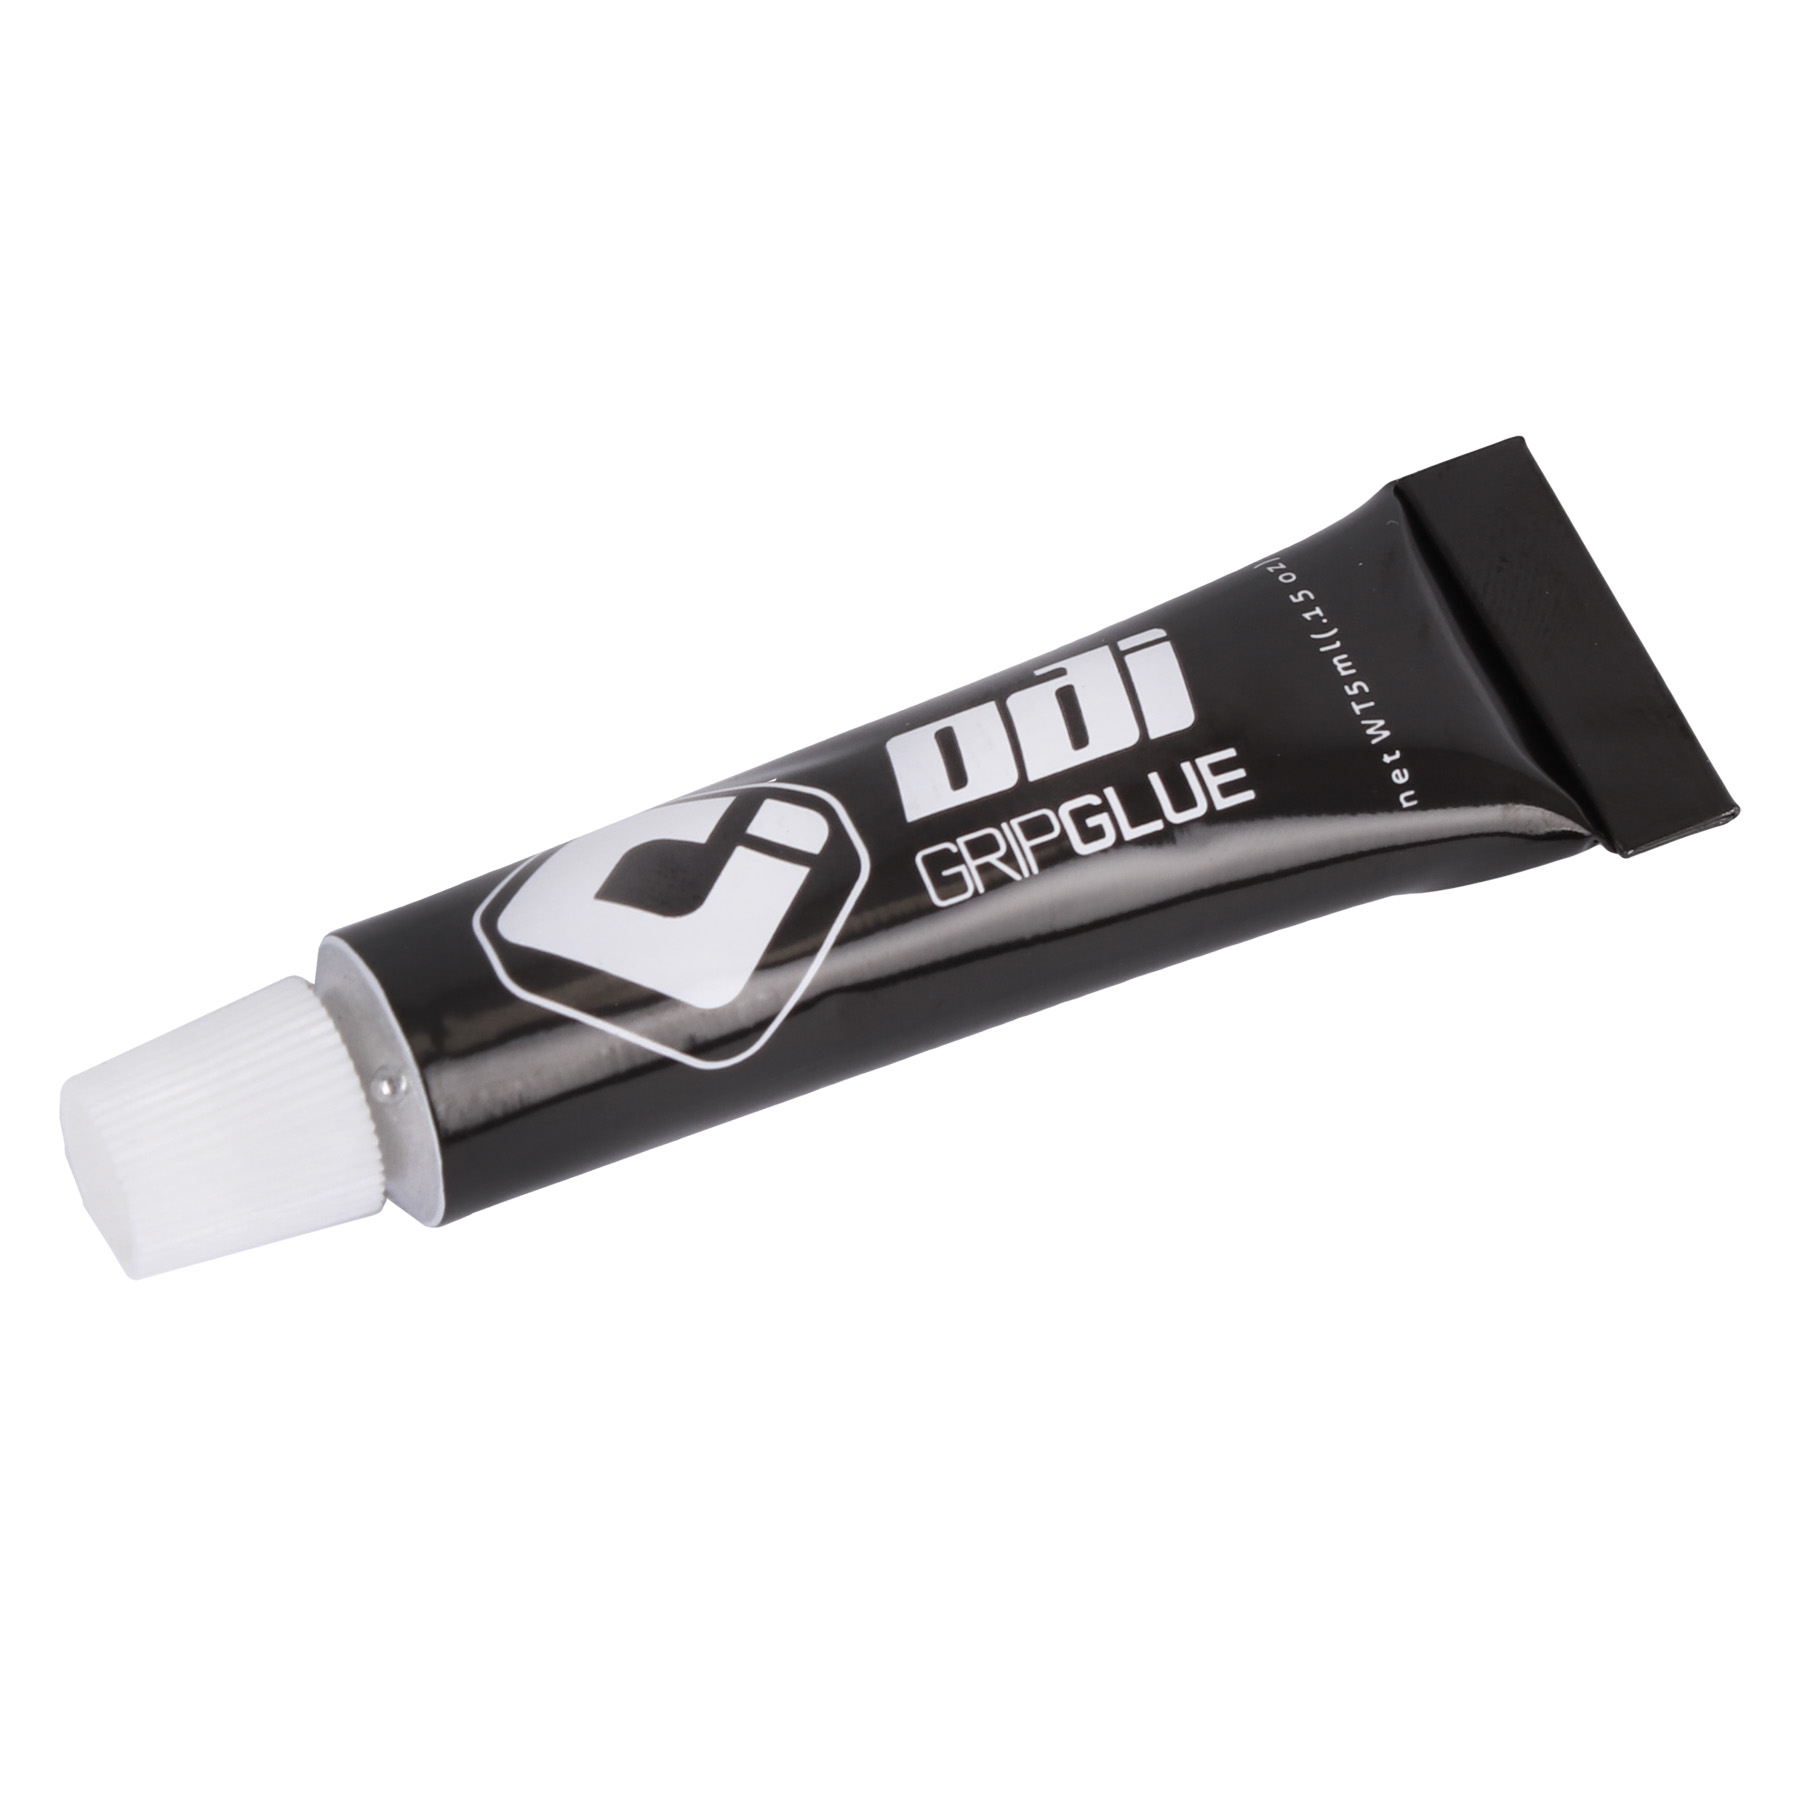 Produktbild von ODI Grip Glue Griffkleber 5 ml